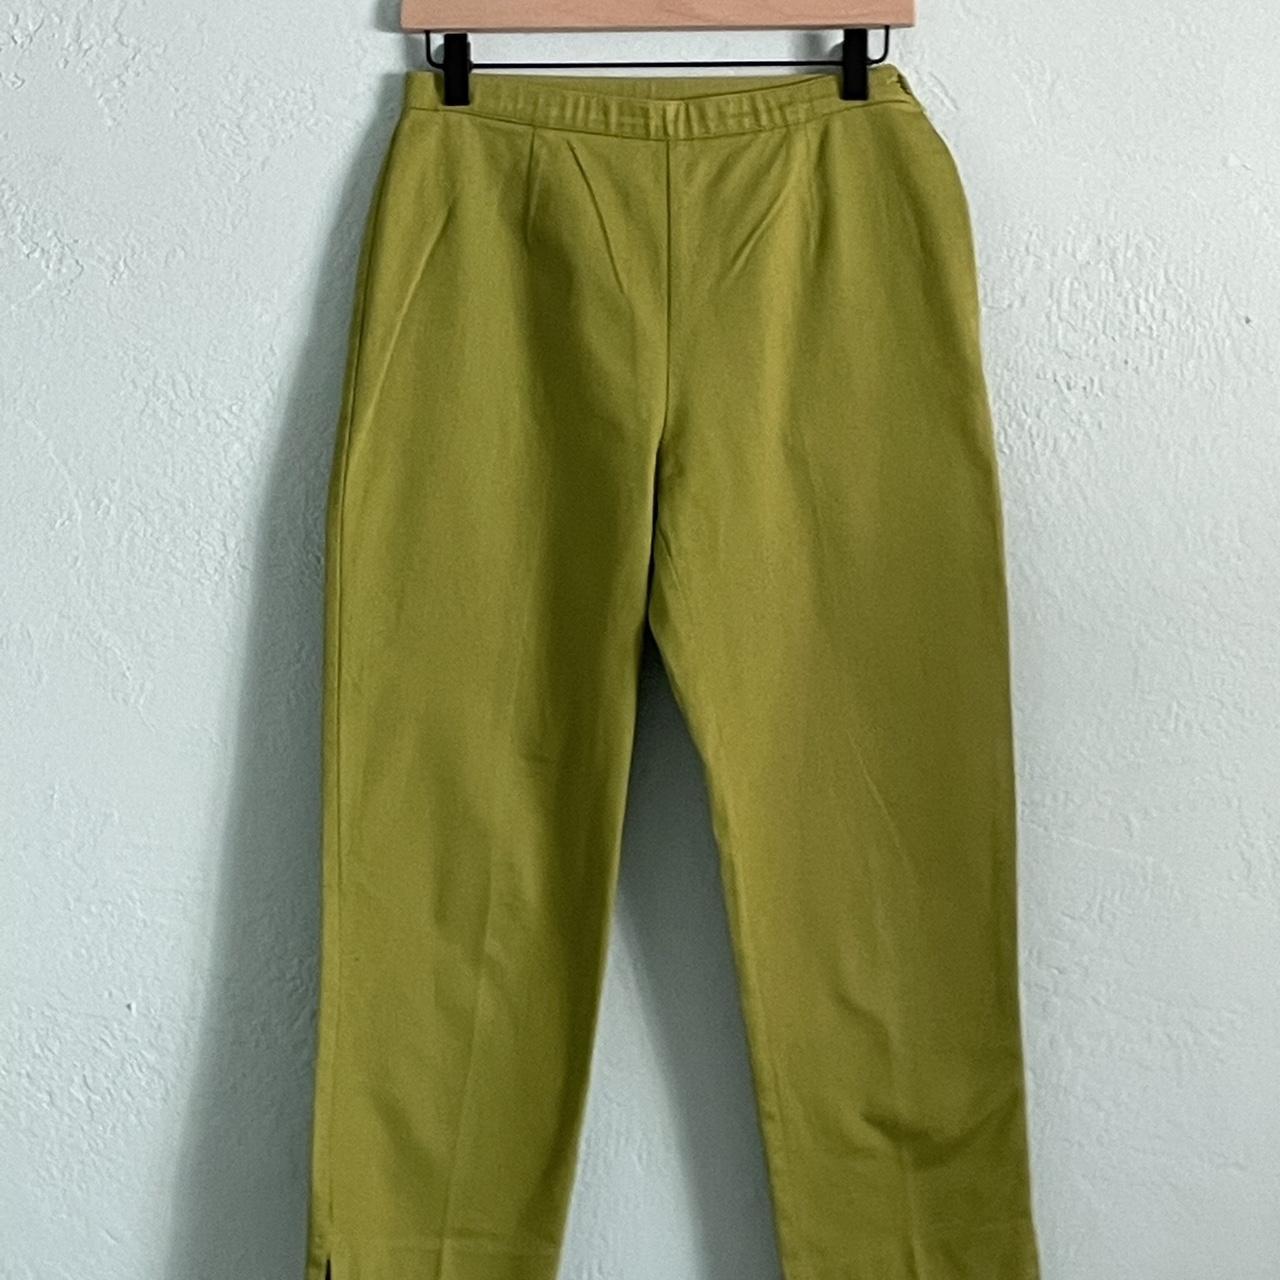 Women's Green Trousers